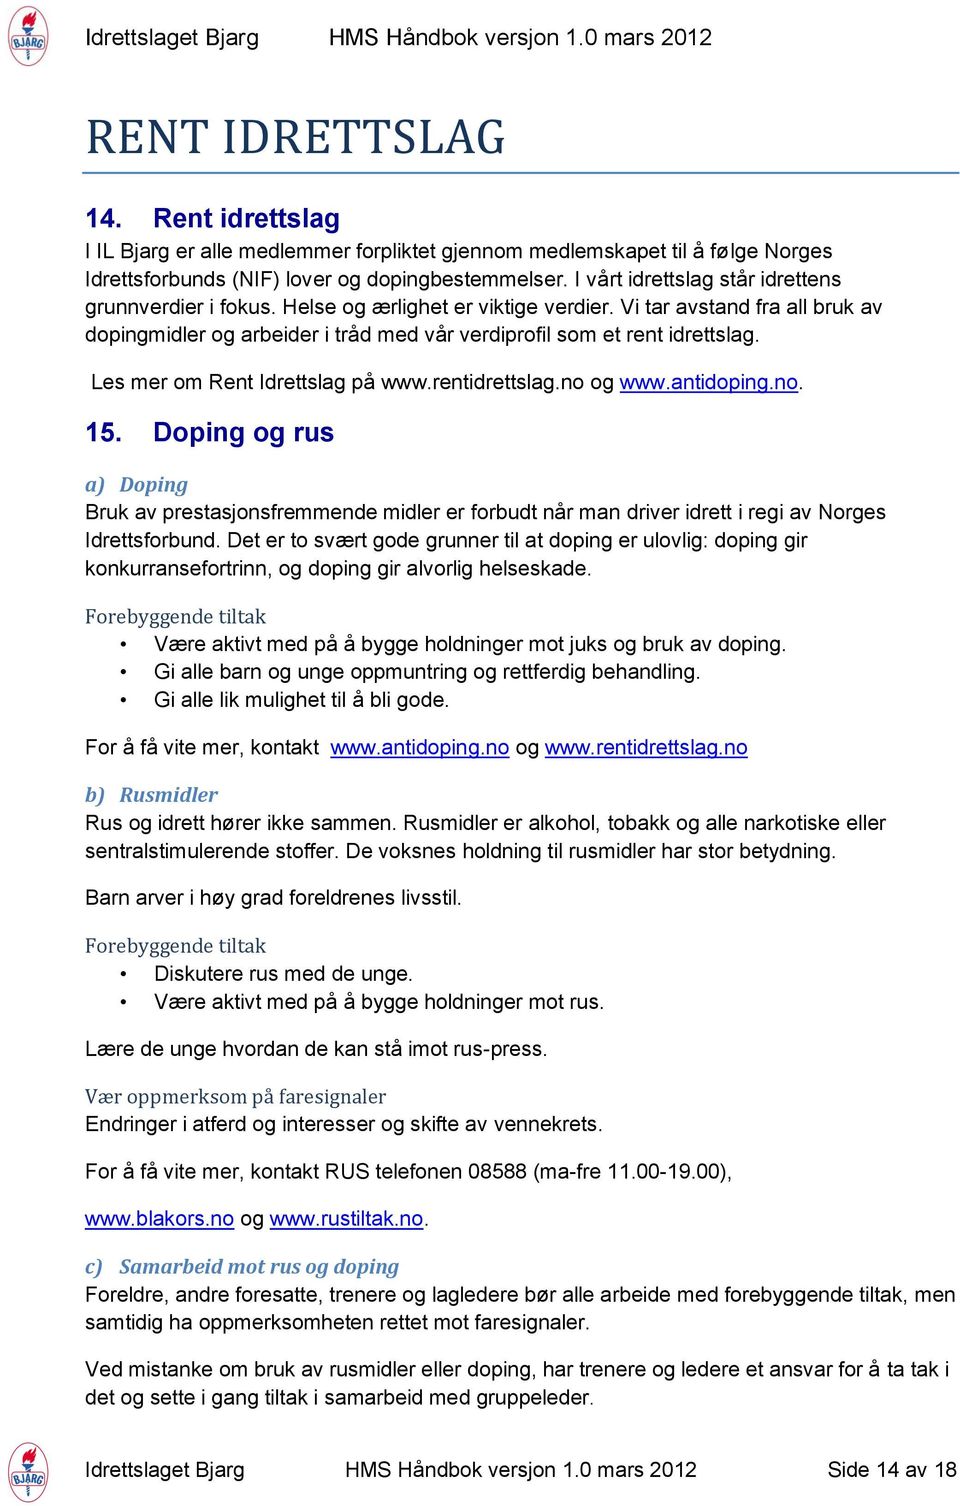 Les mer om Rent Idrettslag på www.rentidrettslag.no og www.antidoping.no. 15.